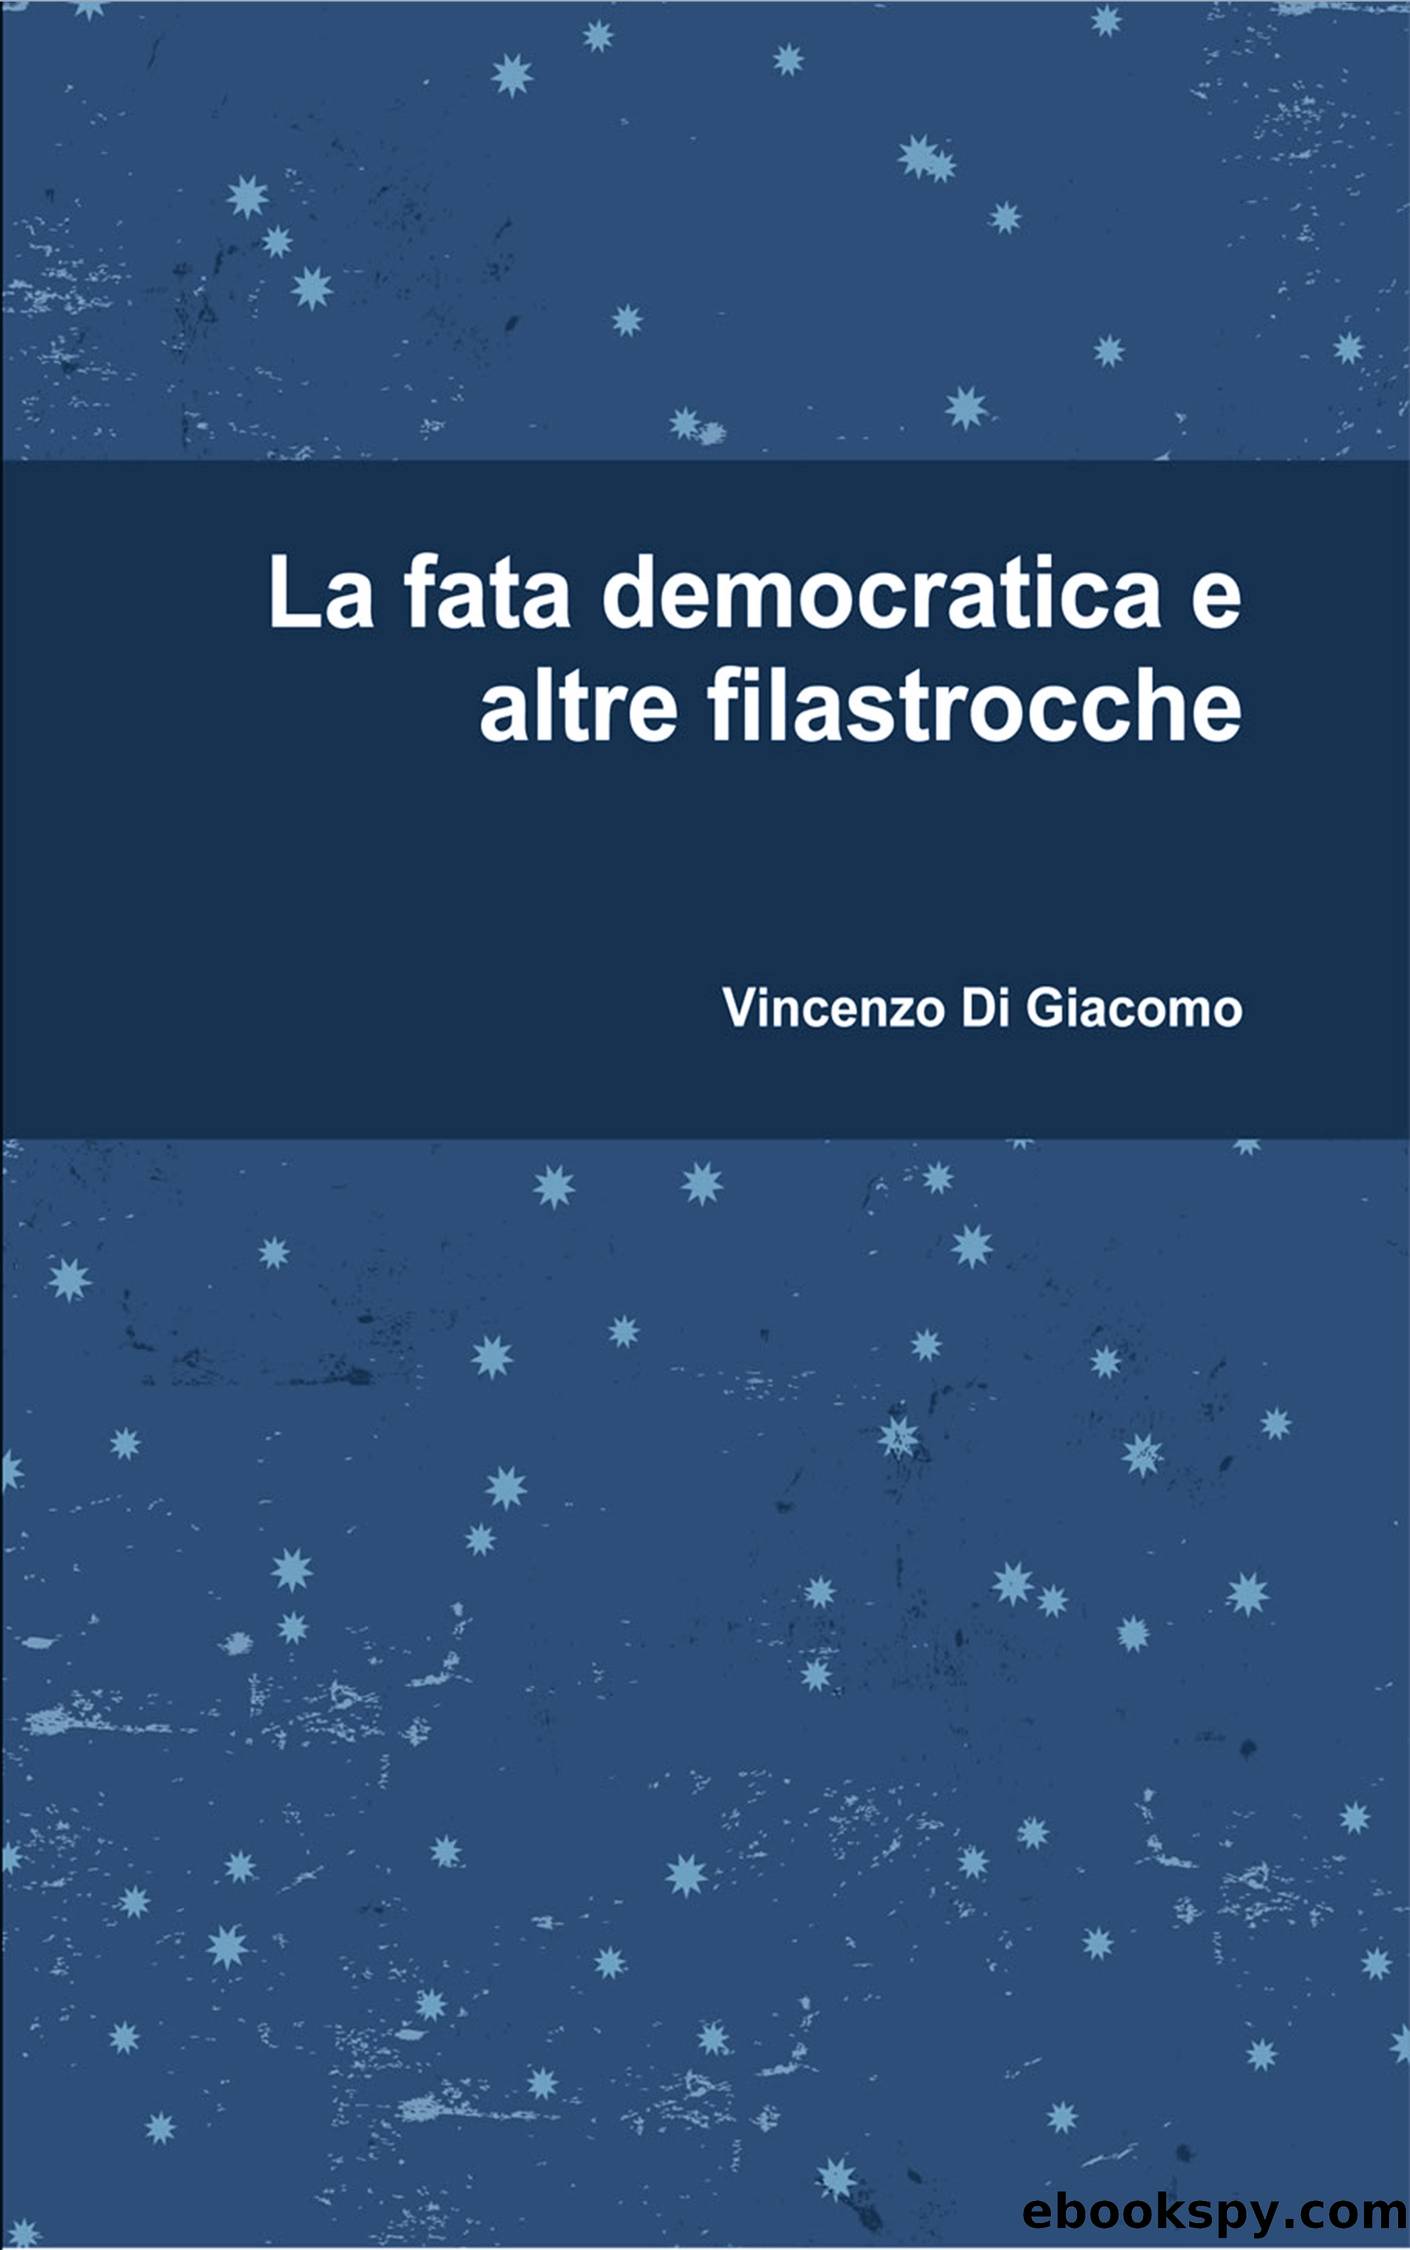 La fata democratica e altre filastrocche by Vincenzo Di Giacomo